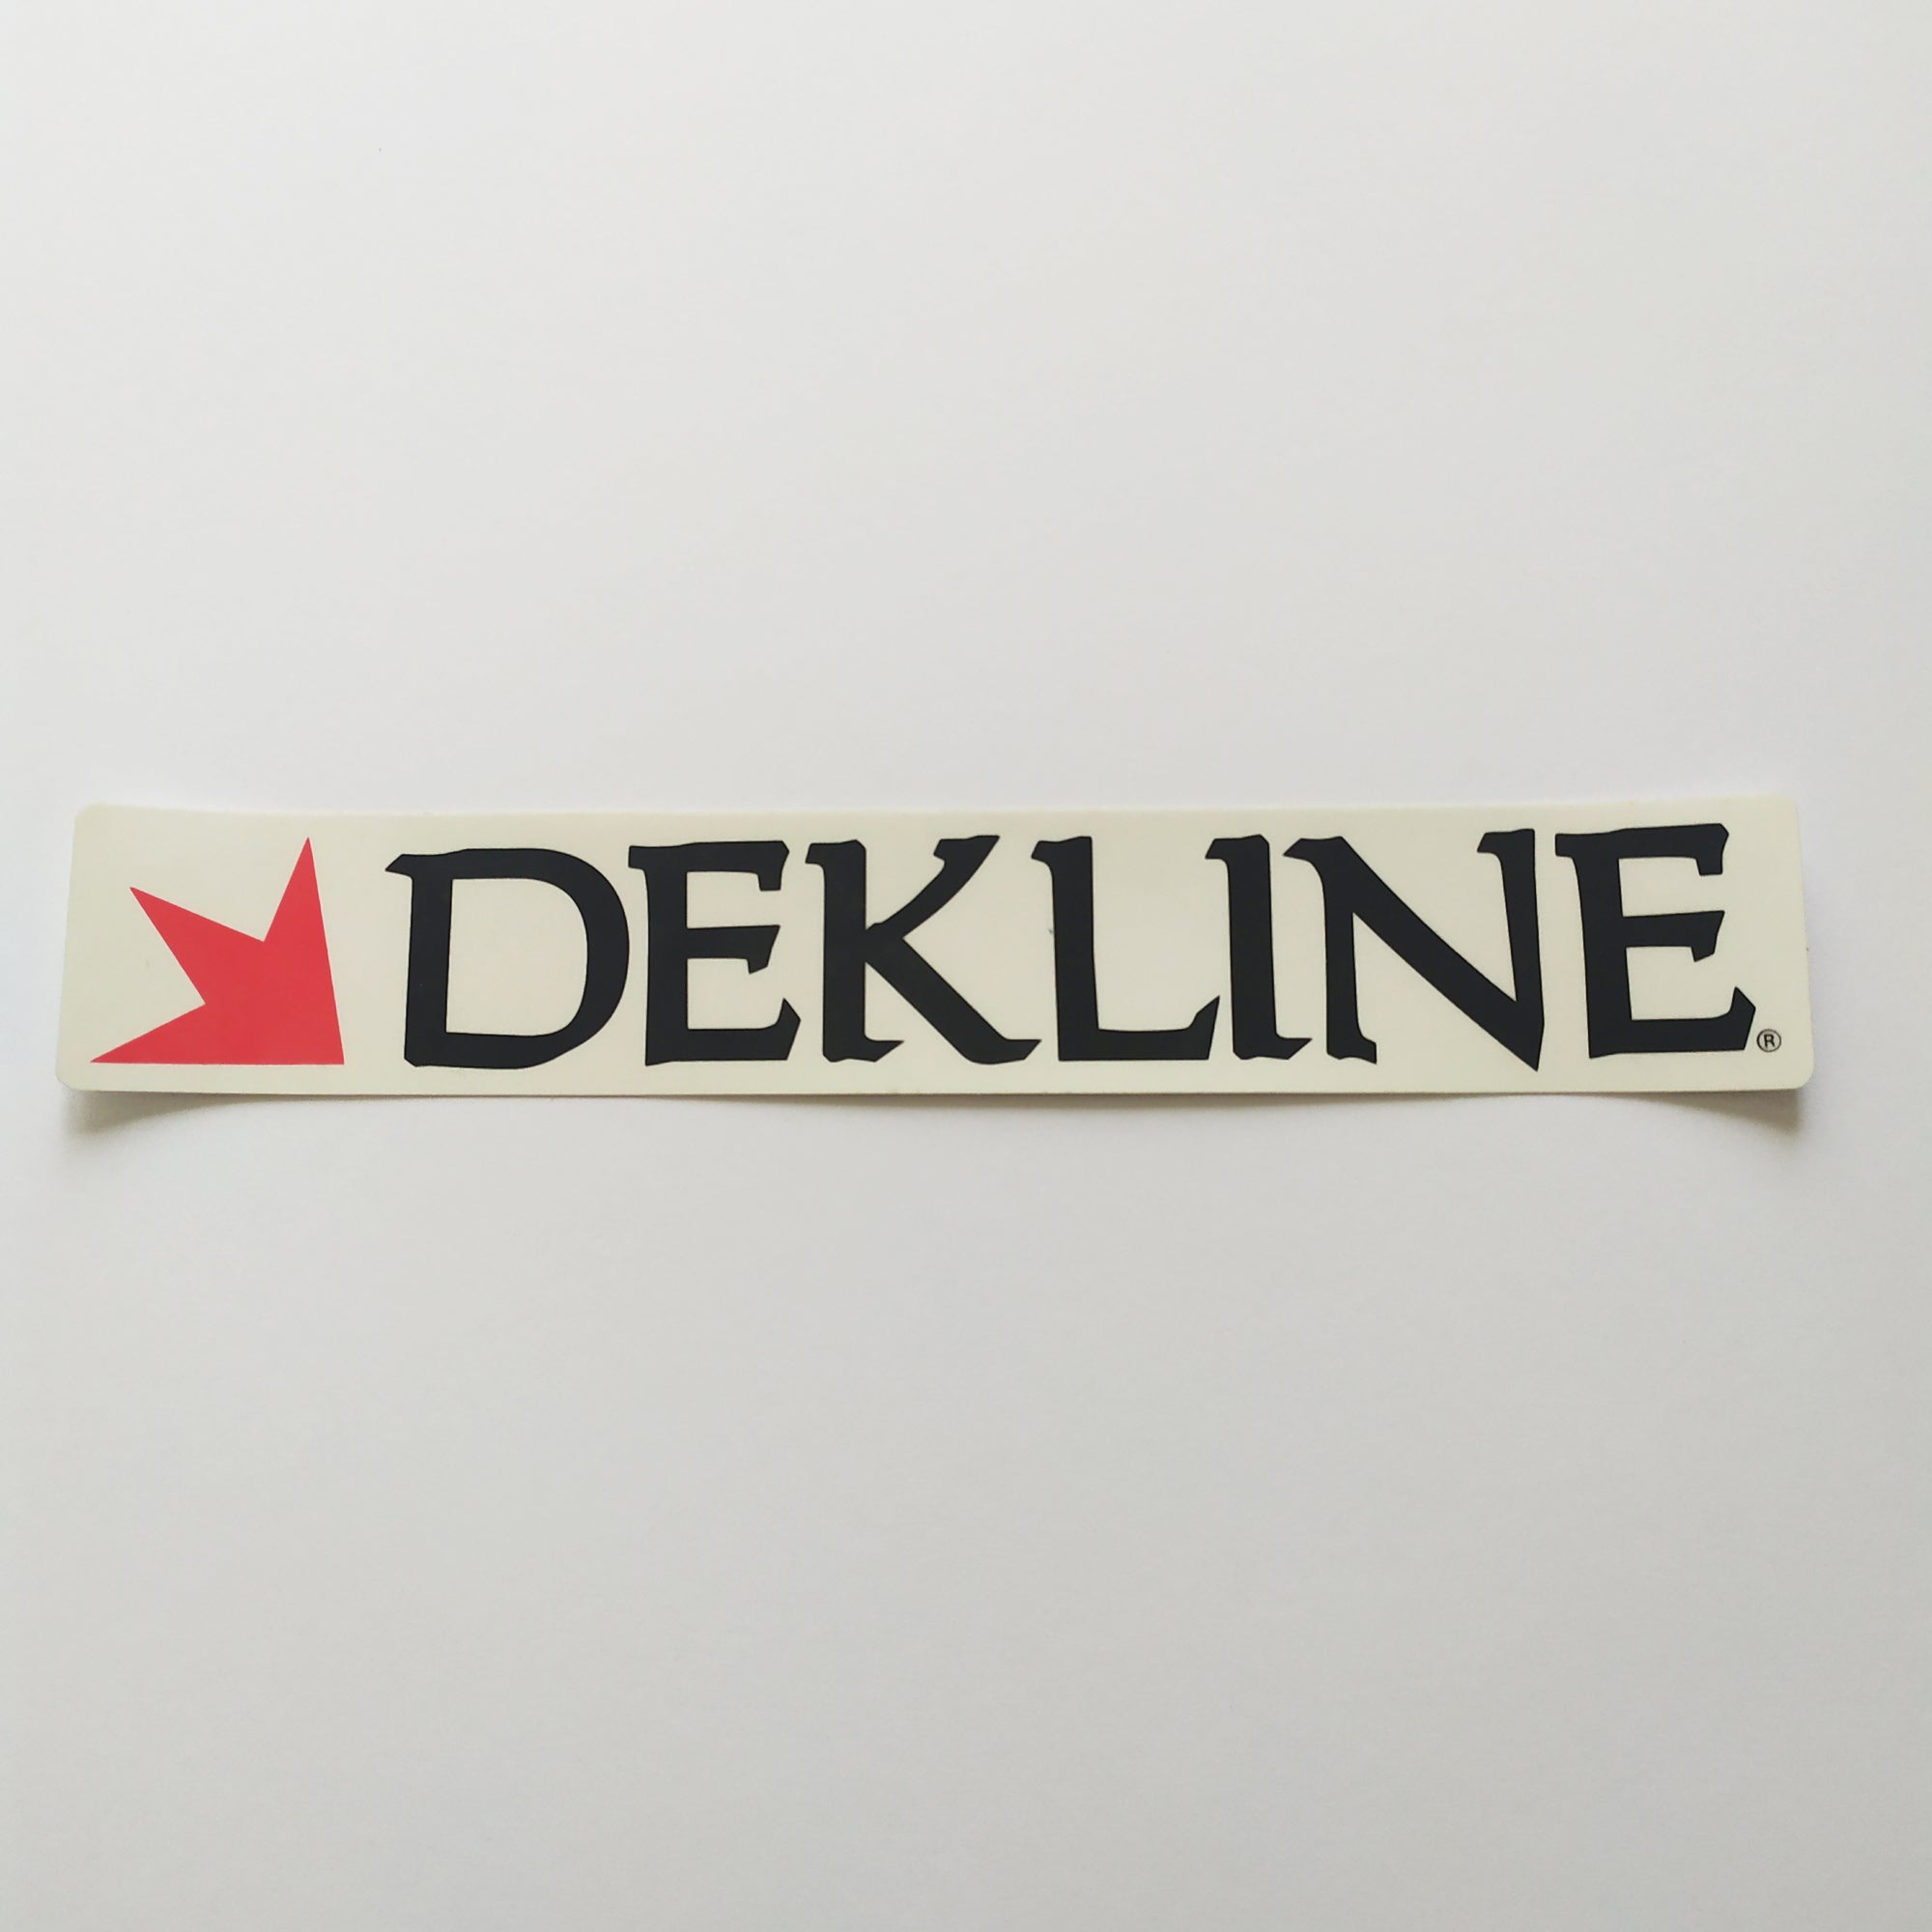 Dekline Footwear Skateboard Sticker